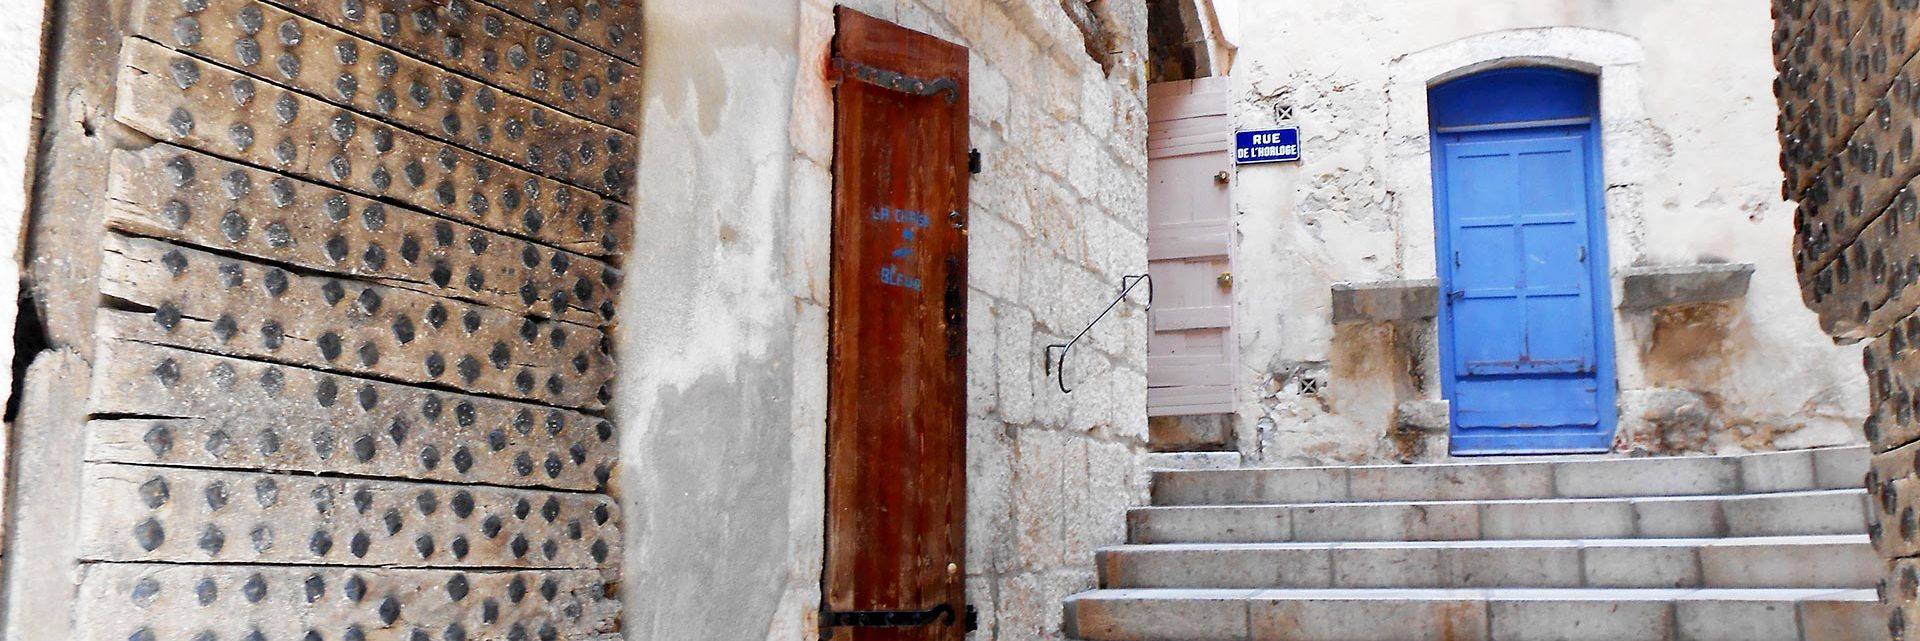 Alleyway and doorway in Cadière d'Azur